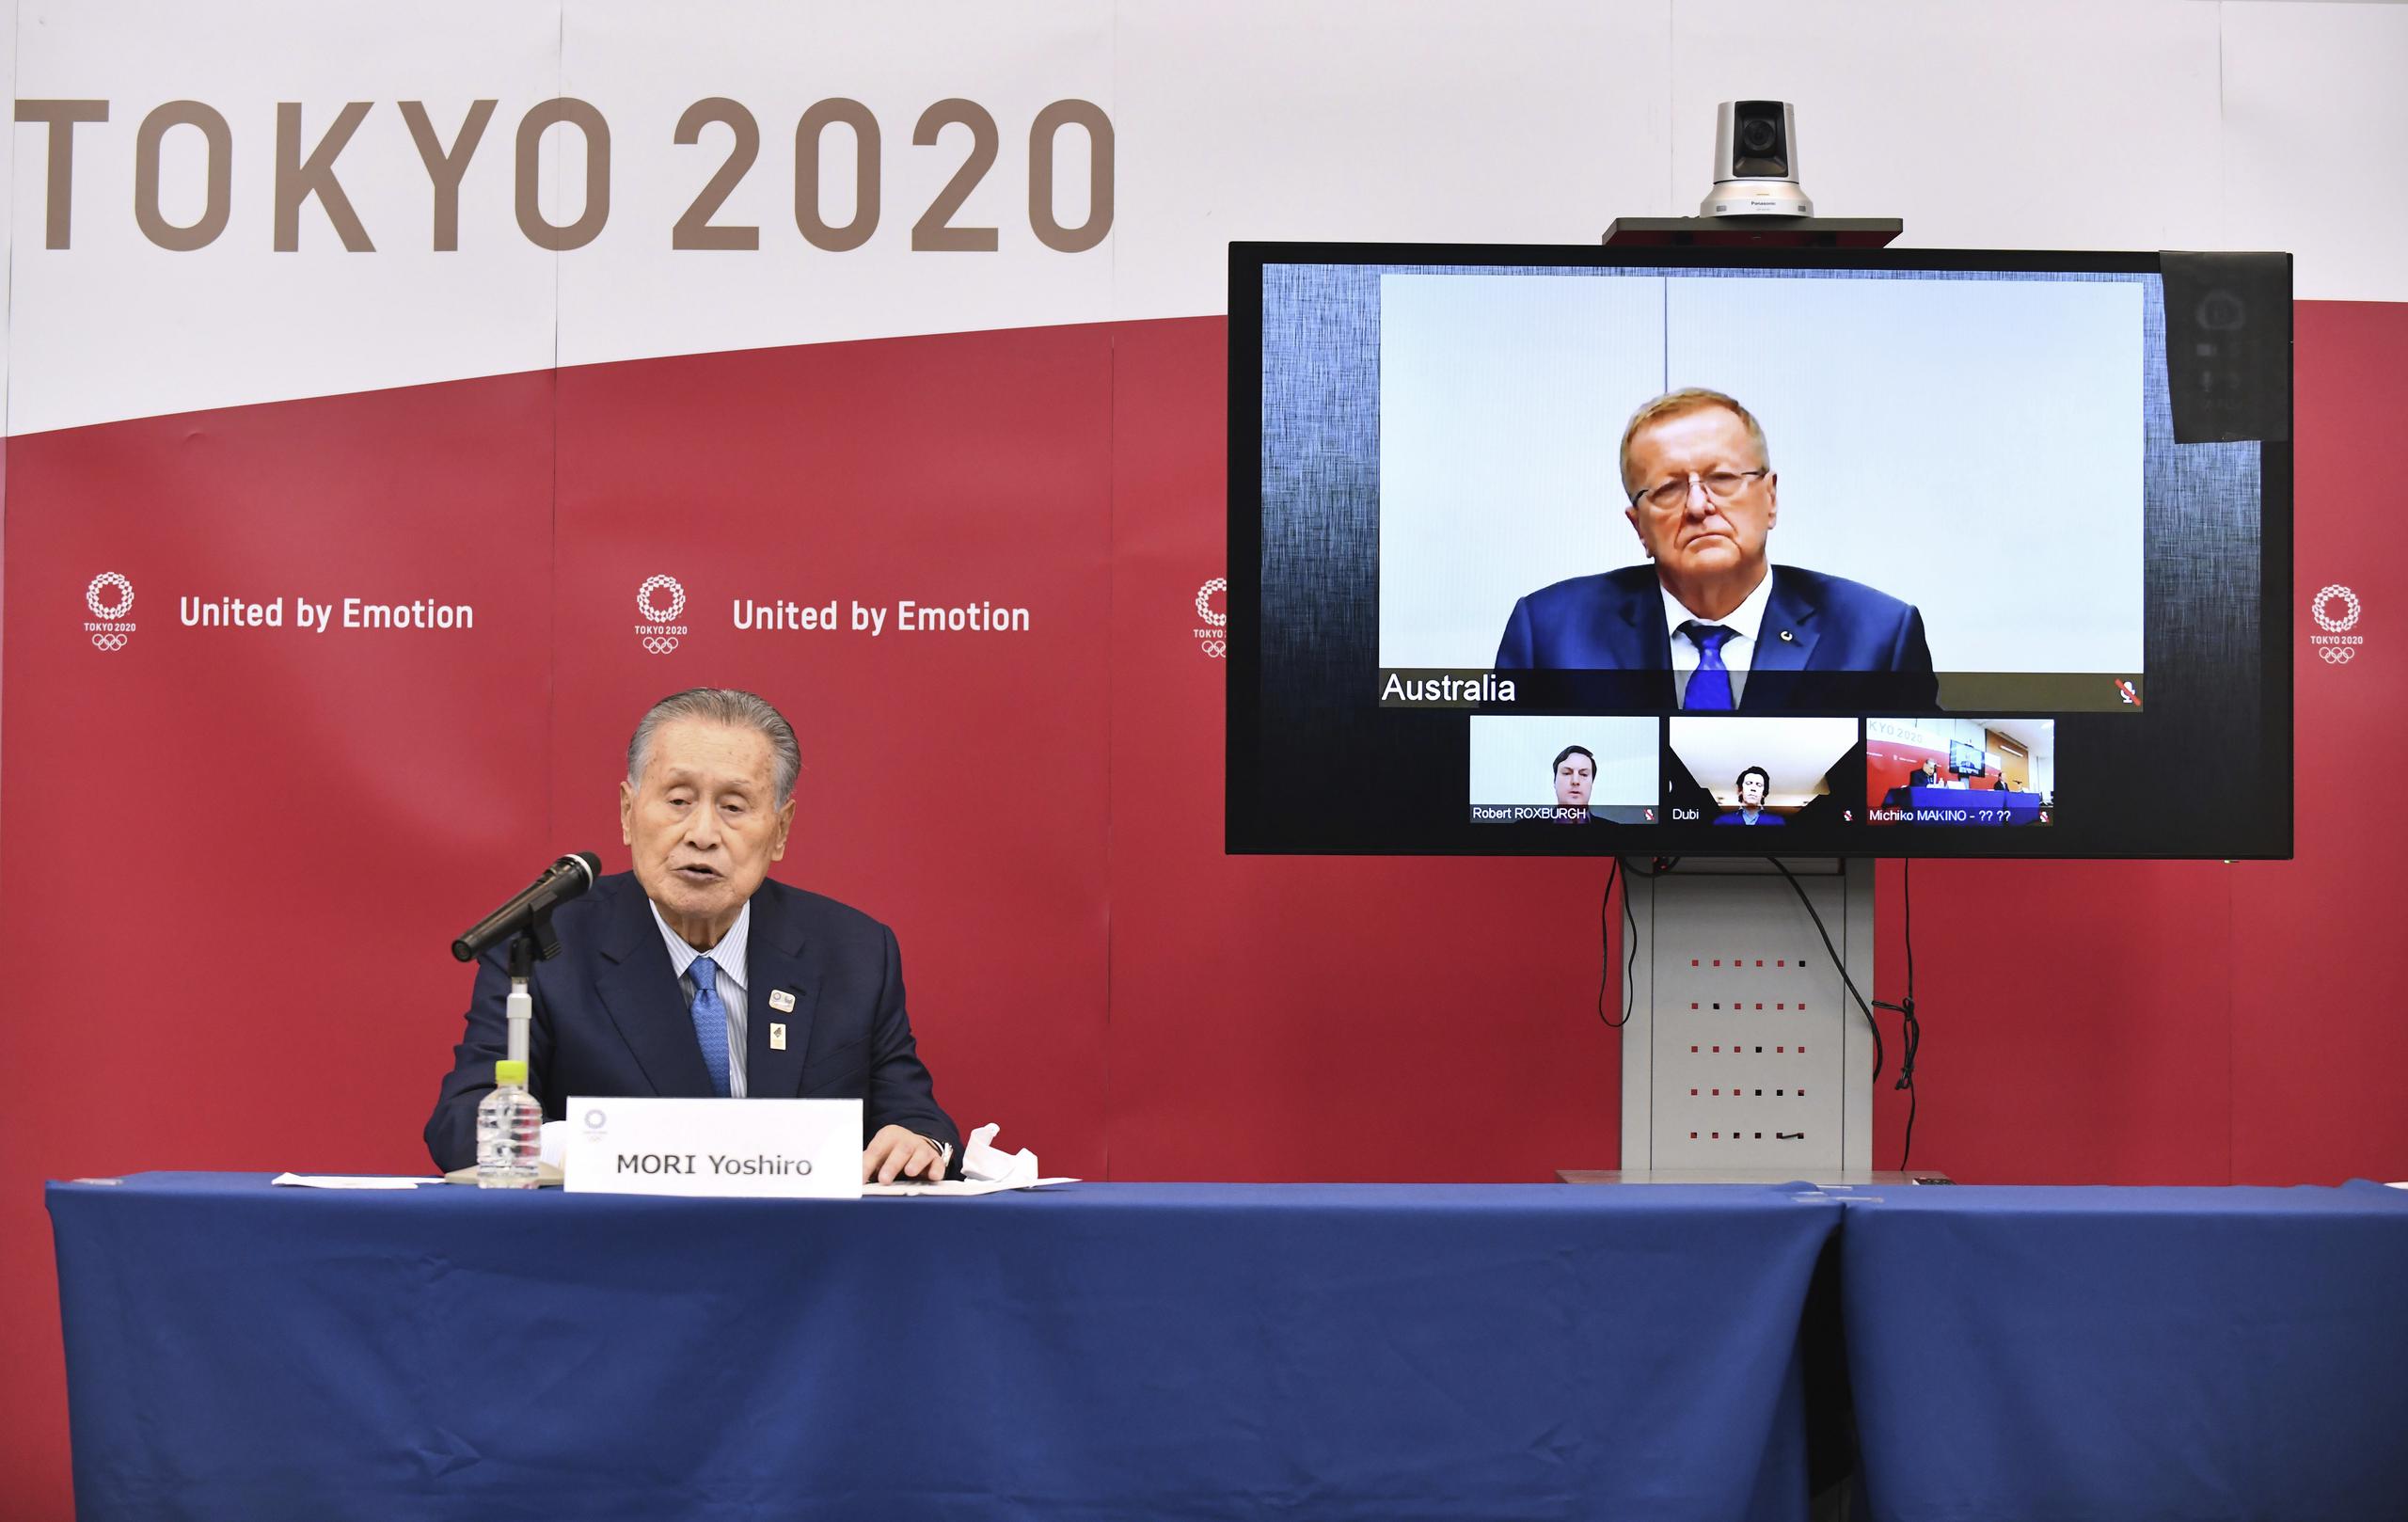 El presidente del comité organizador de los Juegos Olímpicos de Tokio, Yoshiro Mori (izquierda), aparece aquí durante una teleconferencia con John Coates, director de la comisión coordinadora de los Juegos, en Tokio.